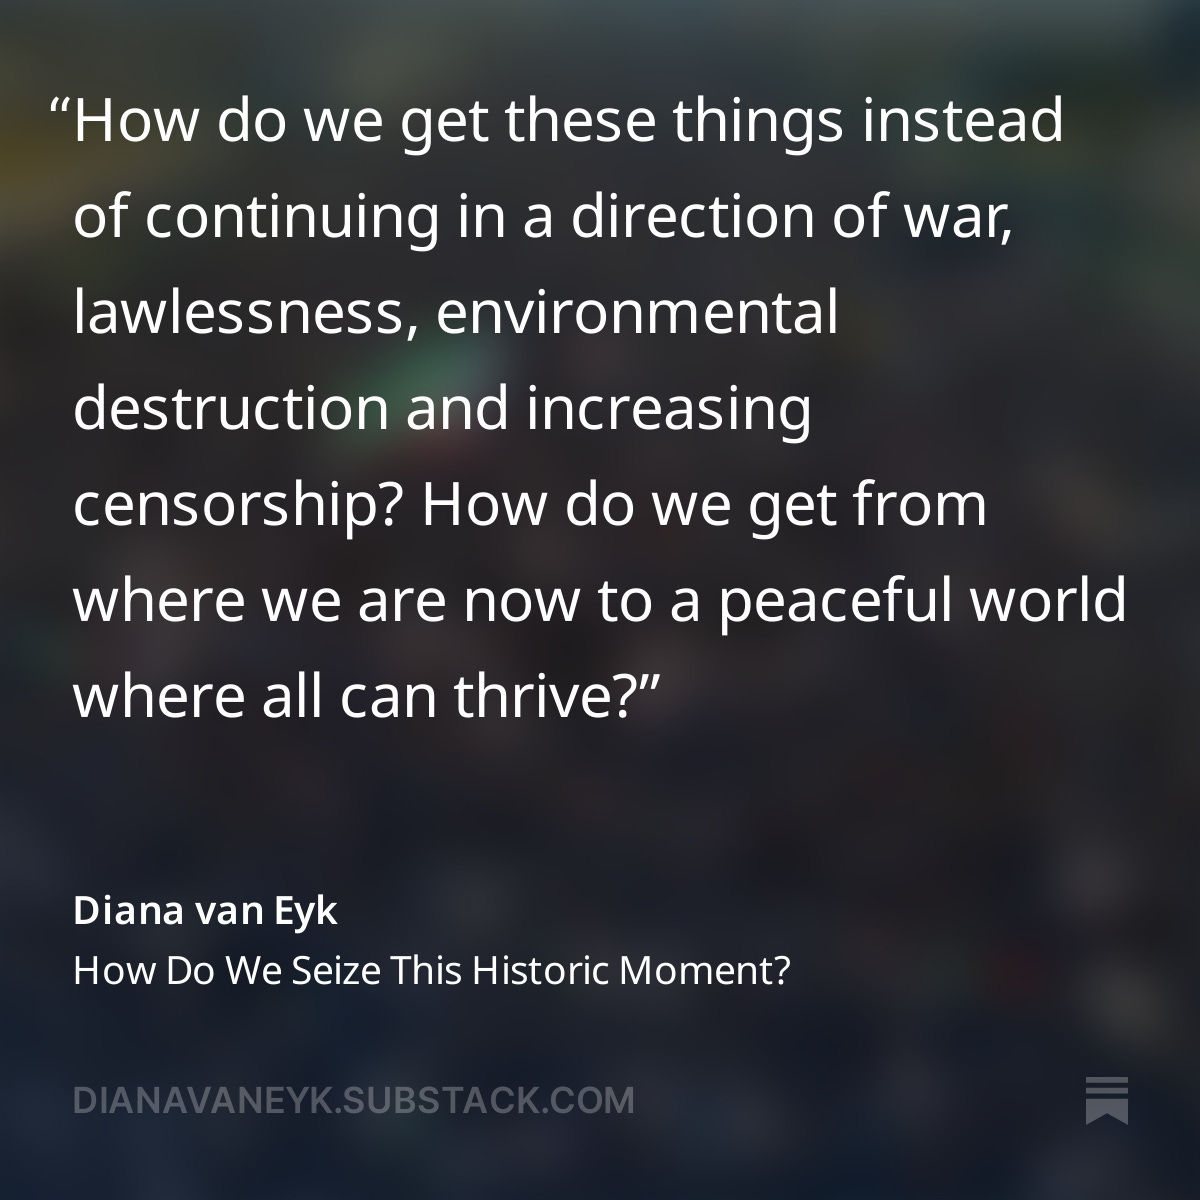 Diana van Eyk Substack Quote